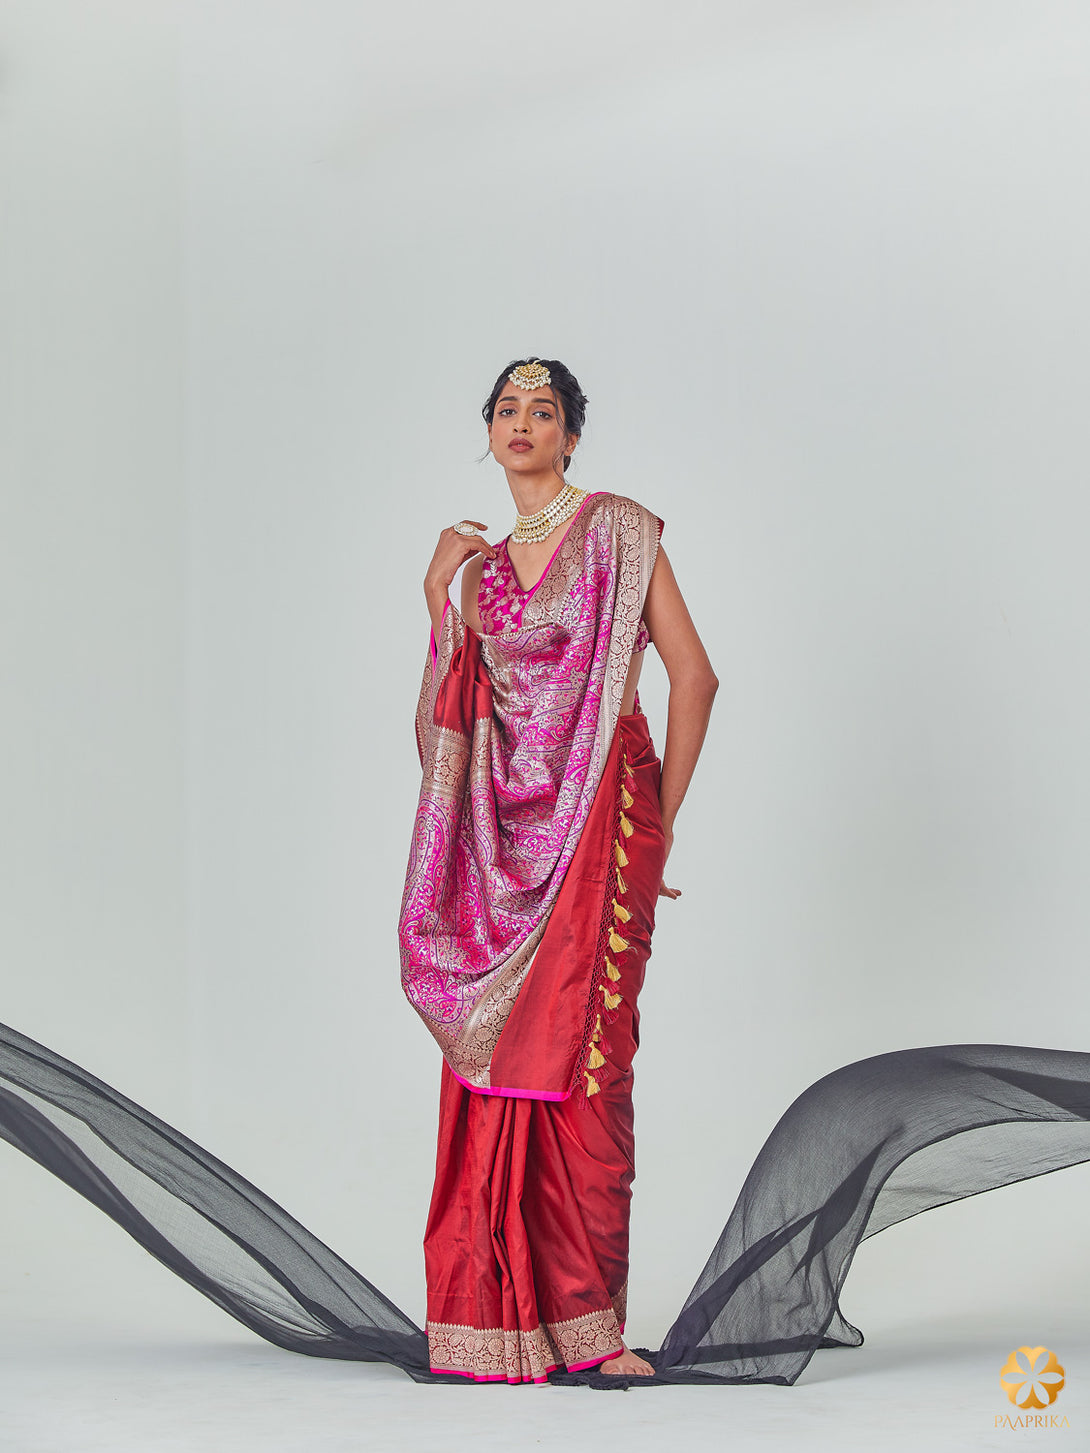 Beautiful Drape of Luxurious Maroon Jamawar Banarasi Saree - Royalty and Sophistication